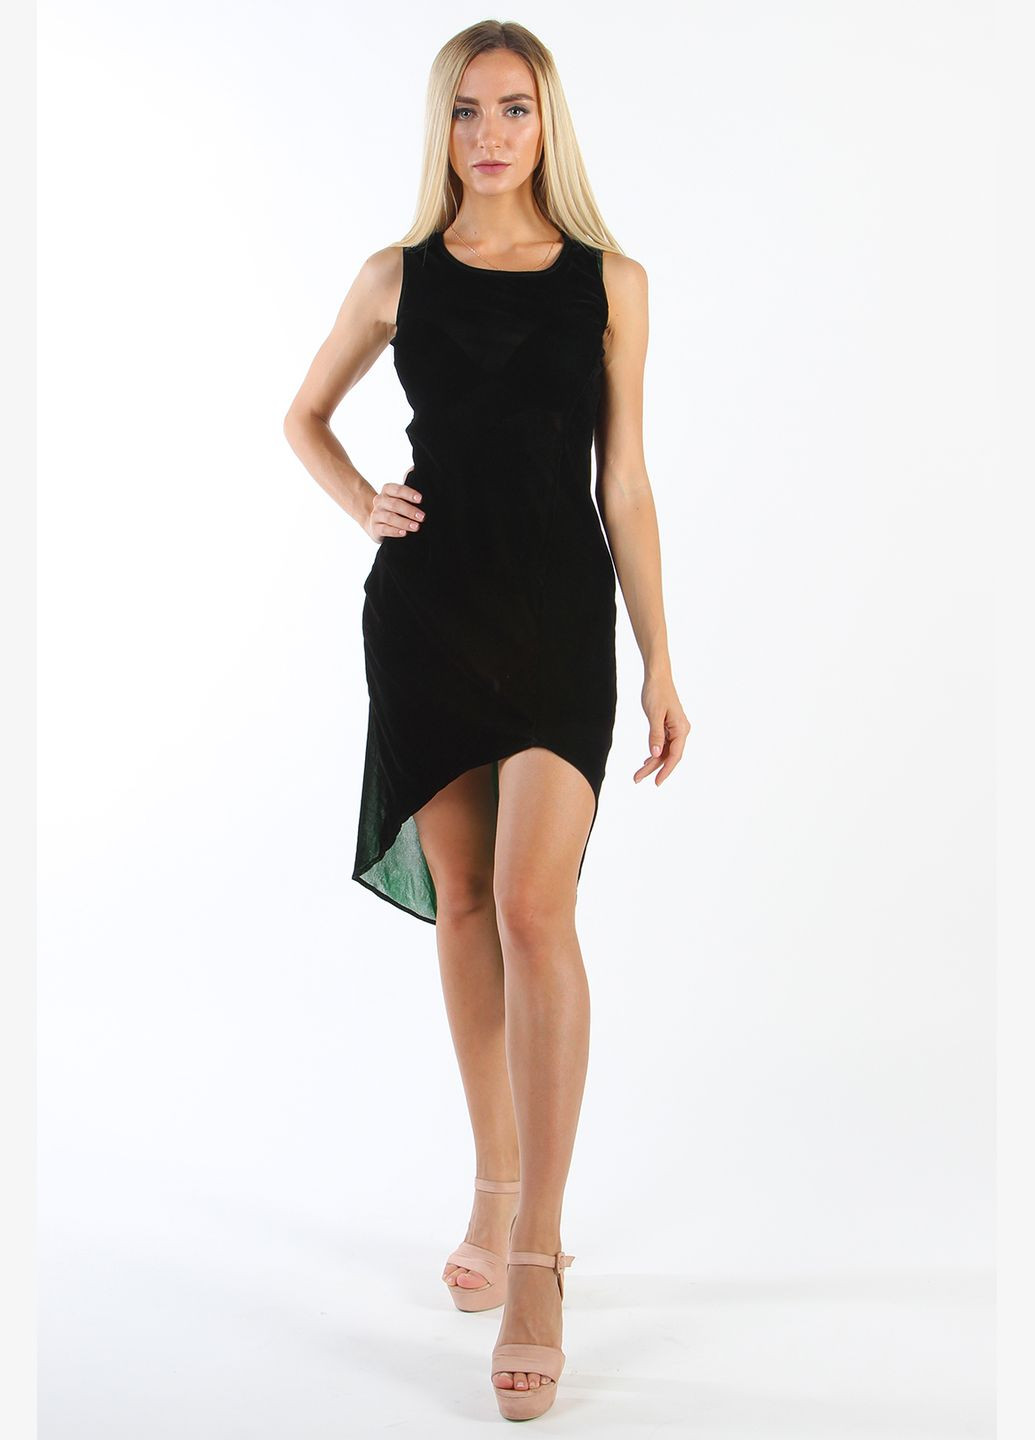 Черное откровенный летнее платье без рукавов nn-382 черный платье-комбинация Number Nine